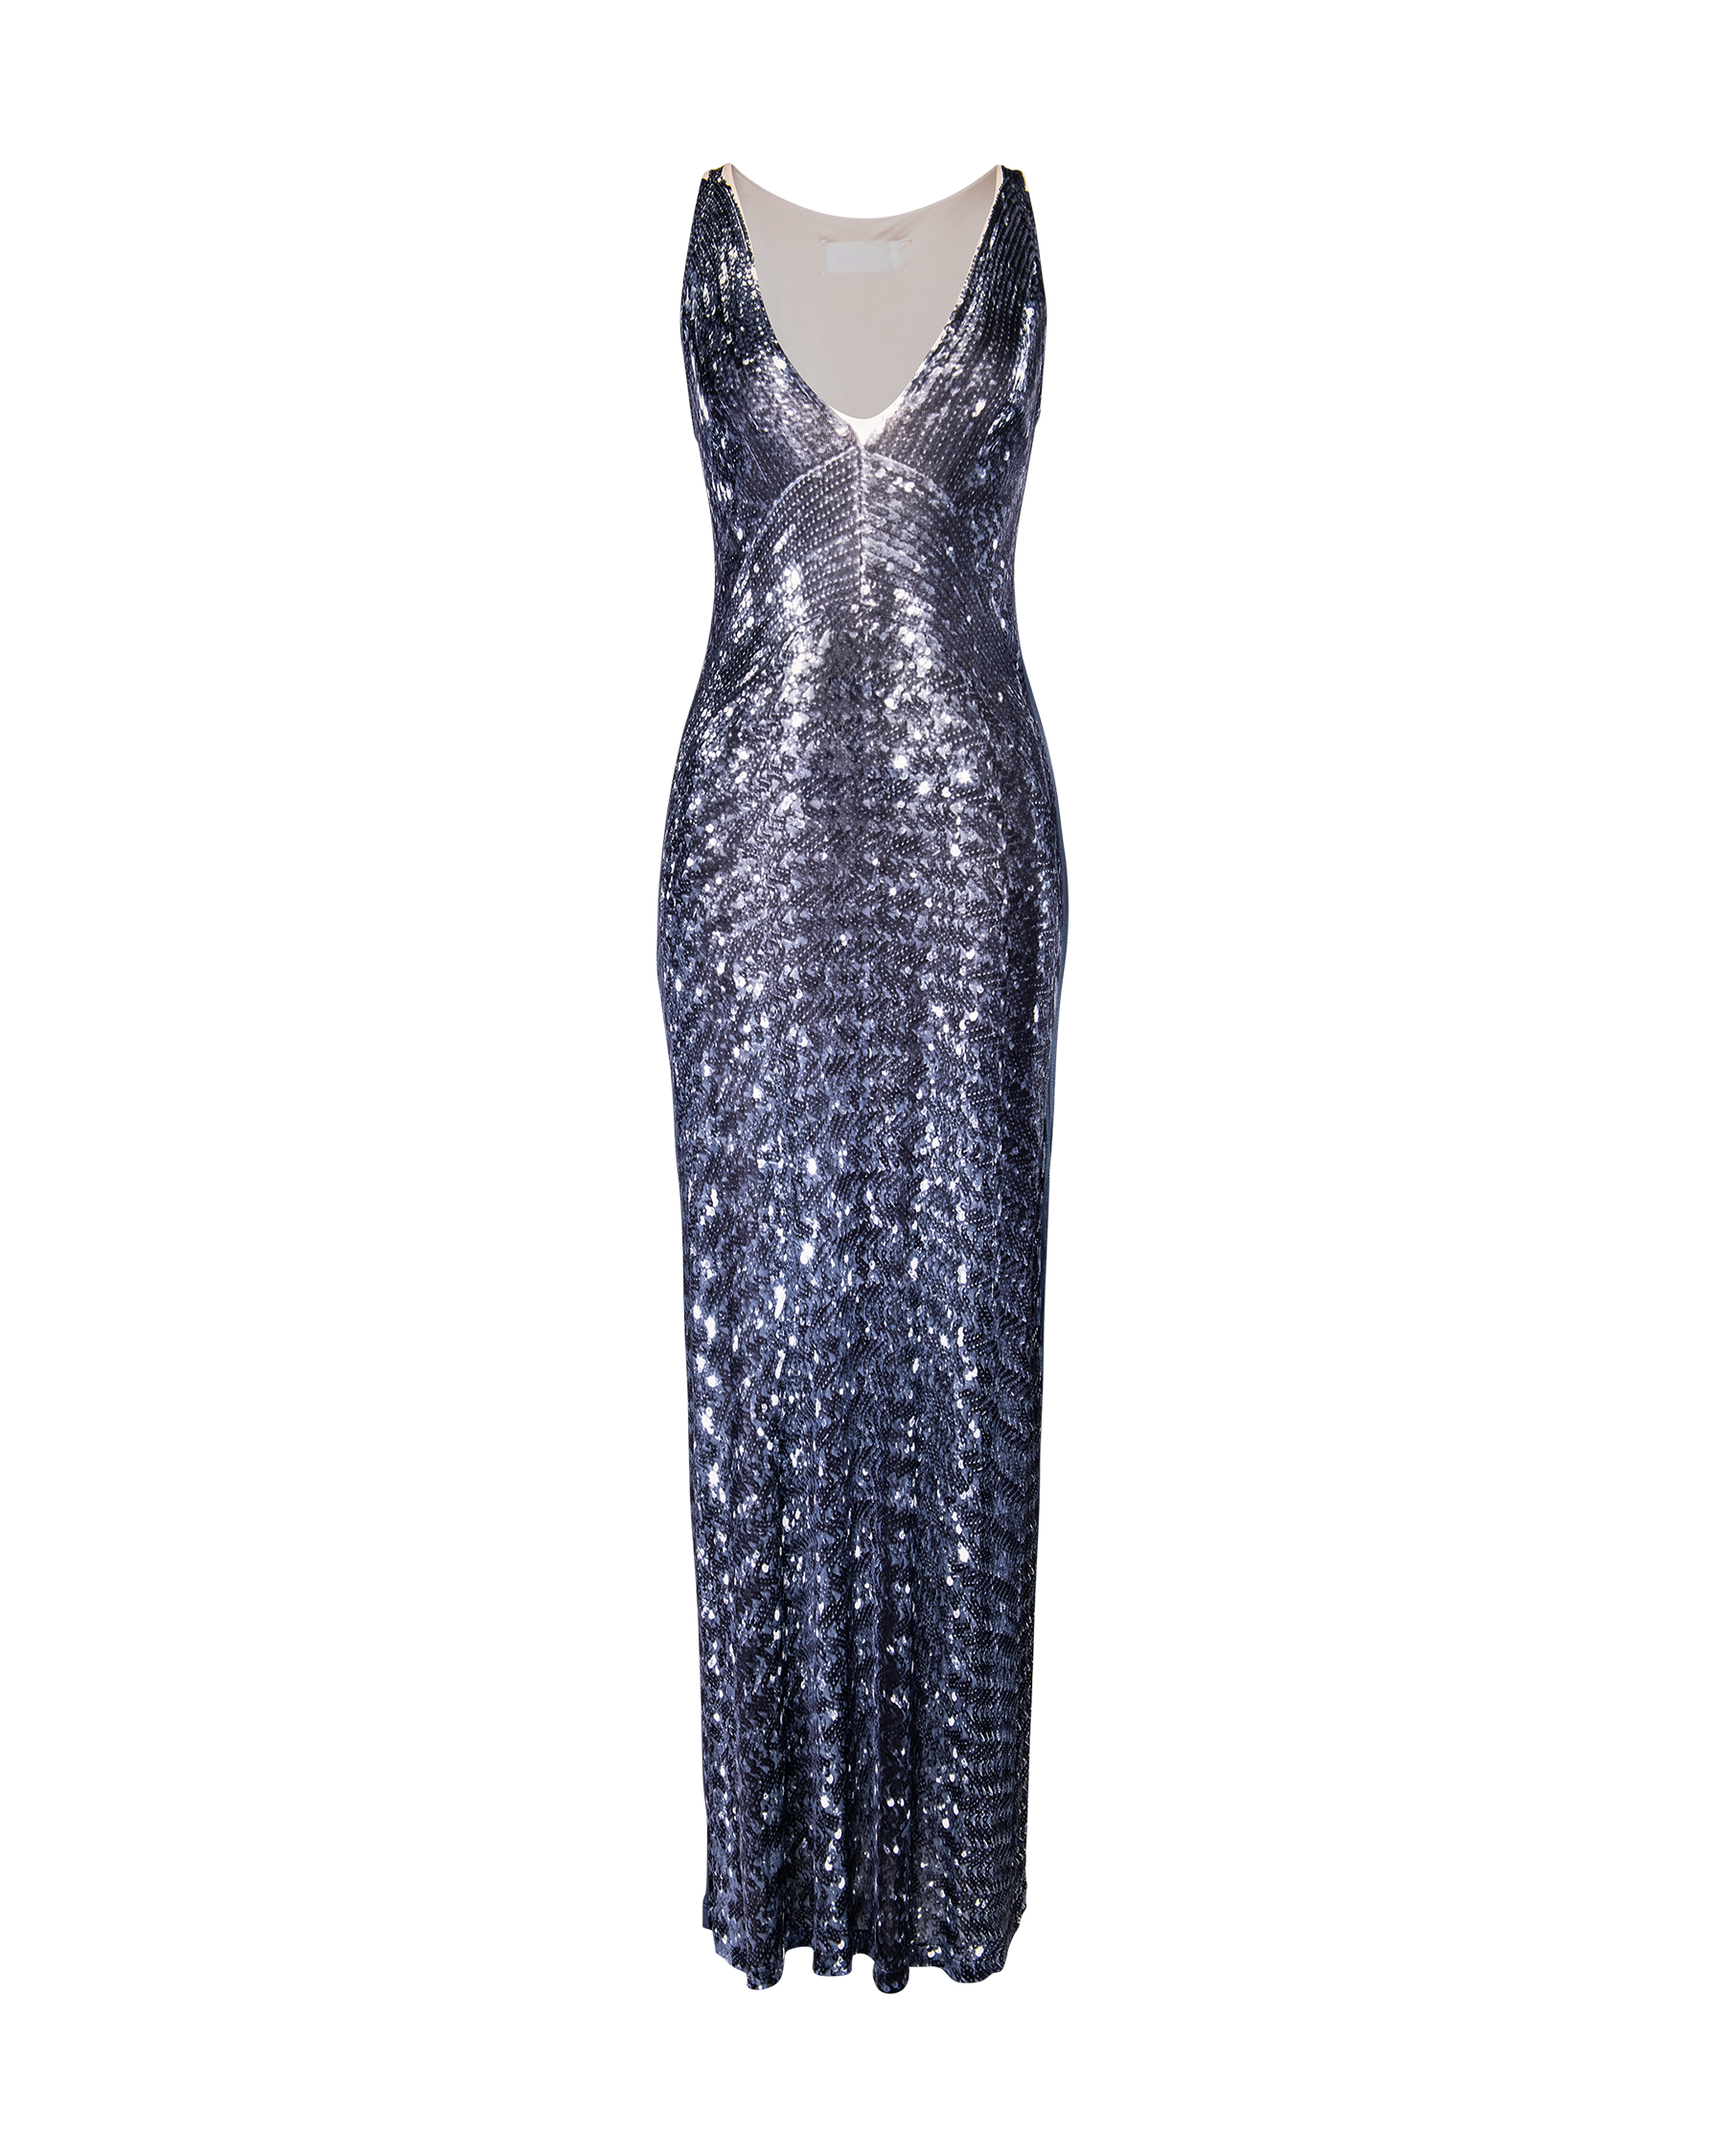 S/S 1996 Sequin Print Trompe L'Oeil Maxi Dress